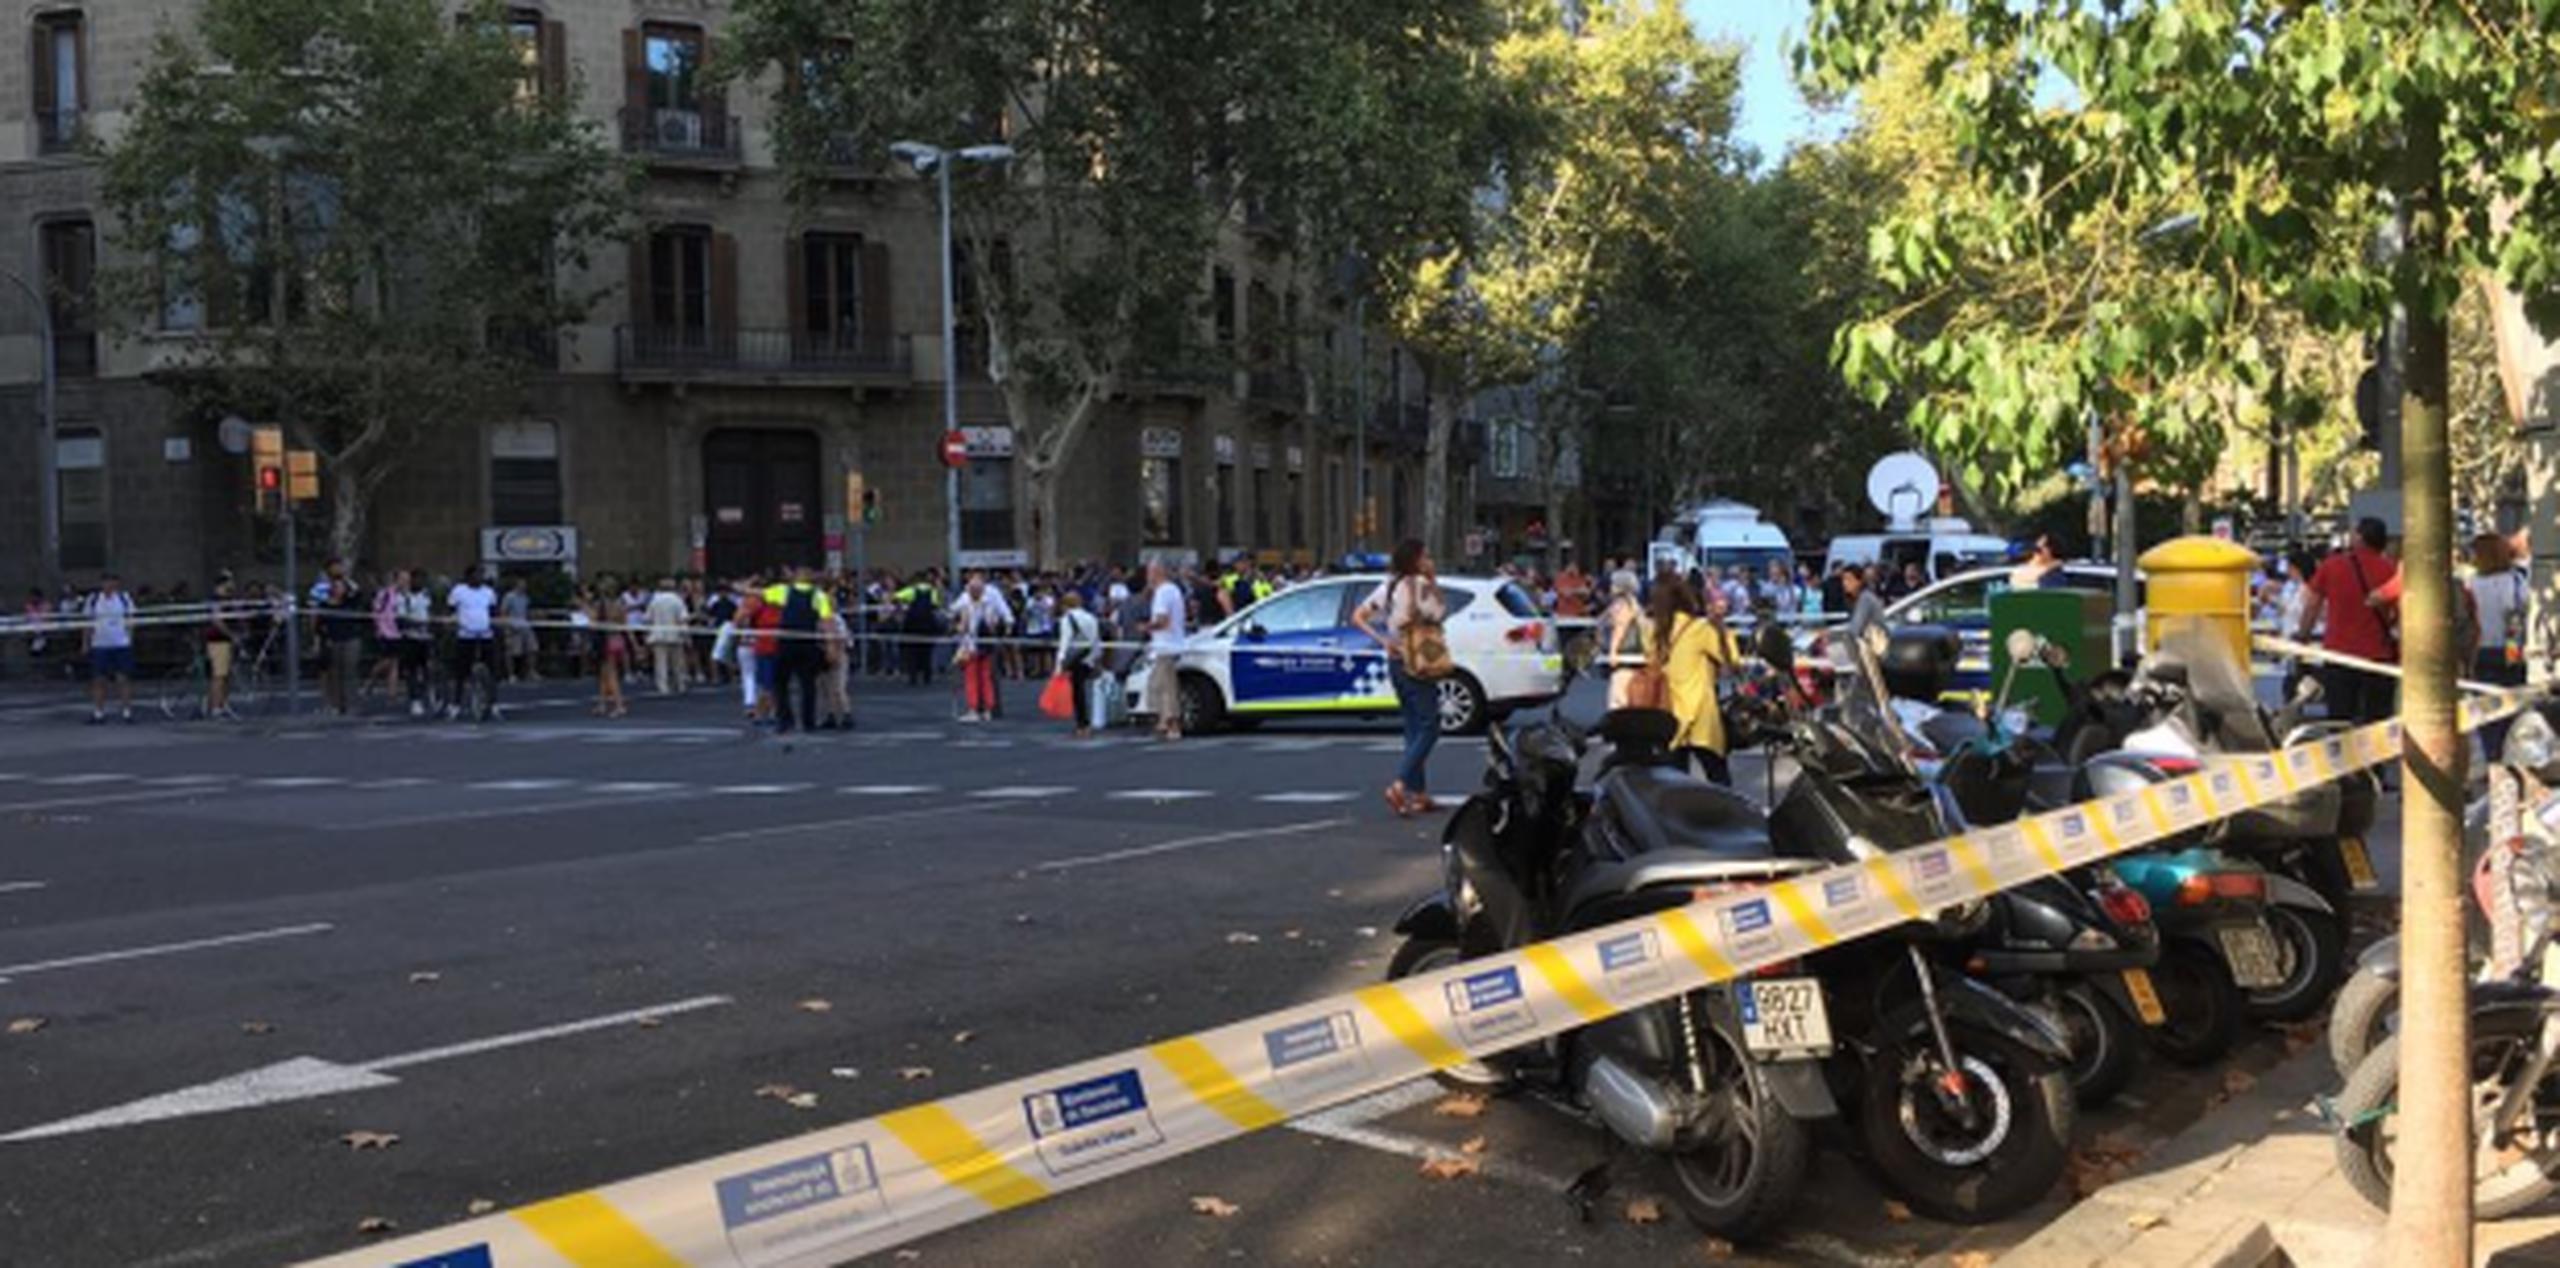 El grupo extremista Estado Islámico se adjudicó el ataque que fue perpretado con una guagua blanca en Barcelona.(nydia.bauza@gfrmedia.com)